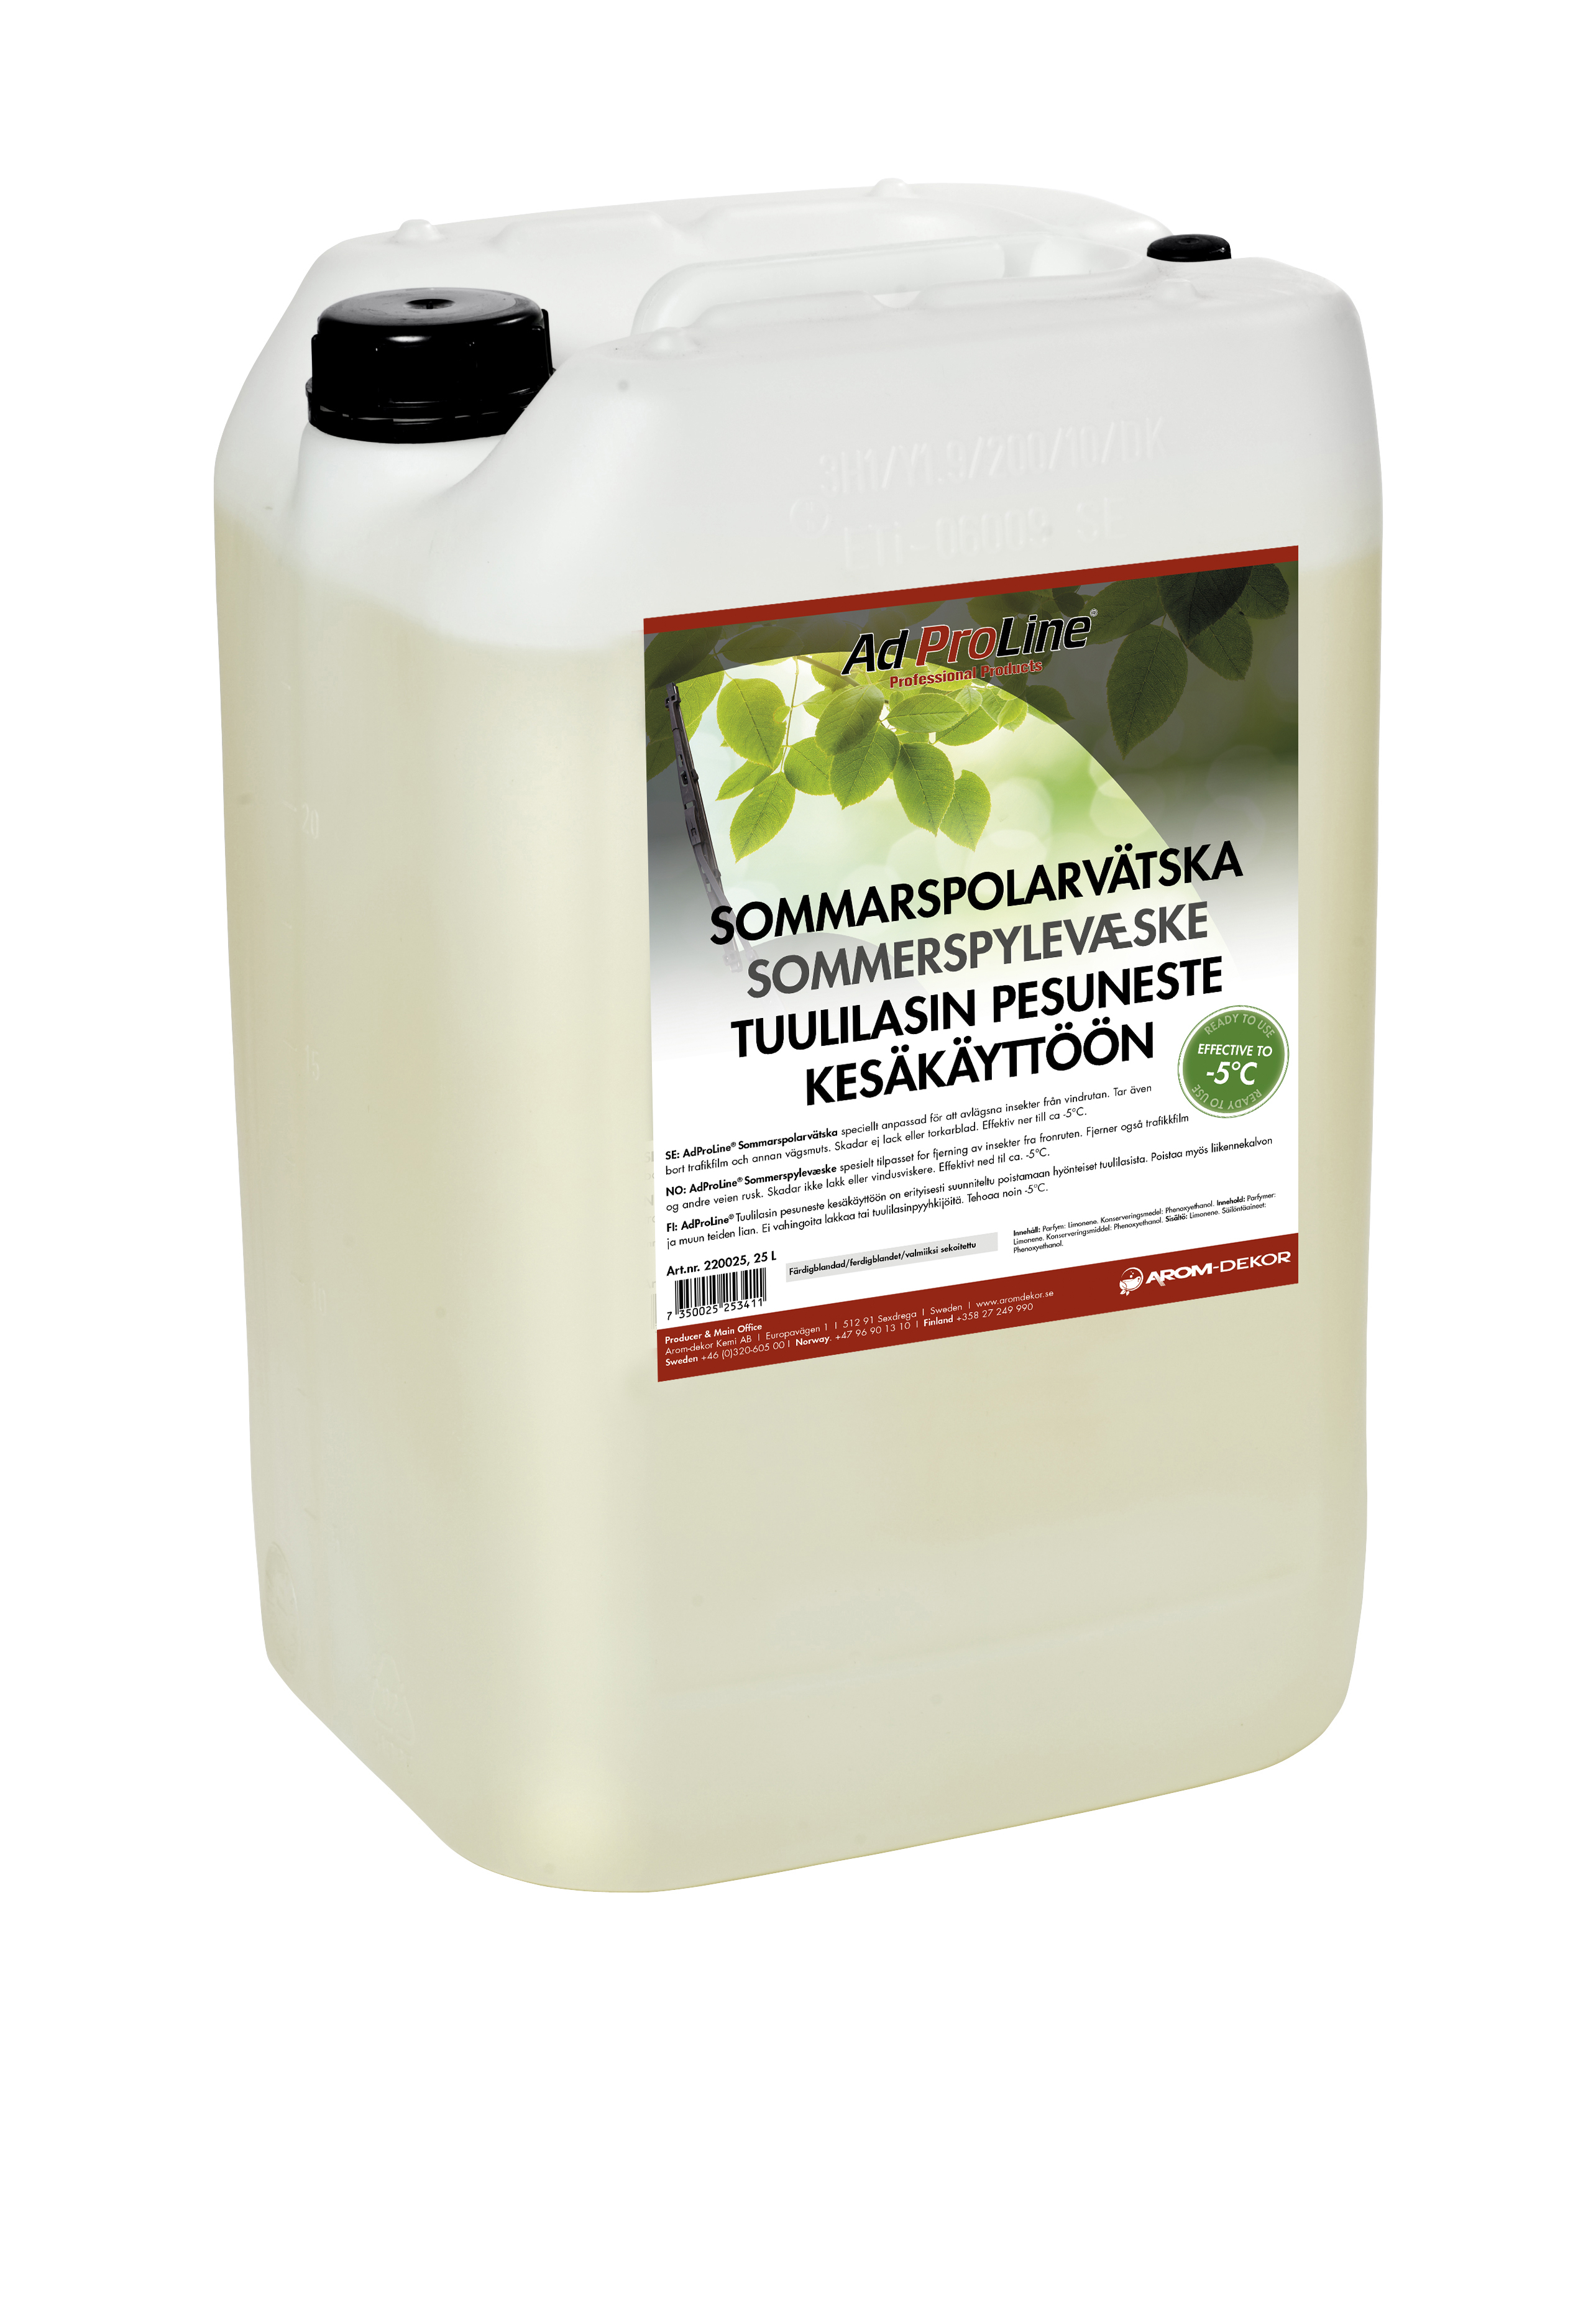 AdProLine® Spolarvätska Sommar, 25 liter dunk (16-pack)-image